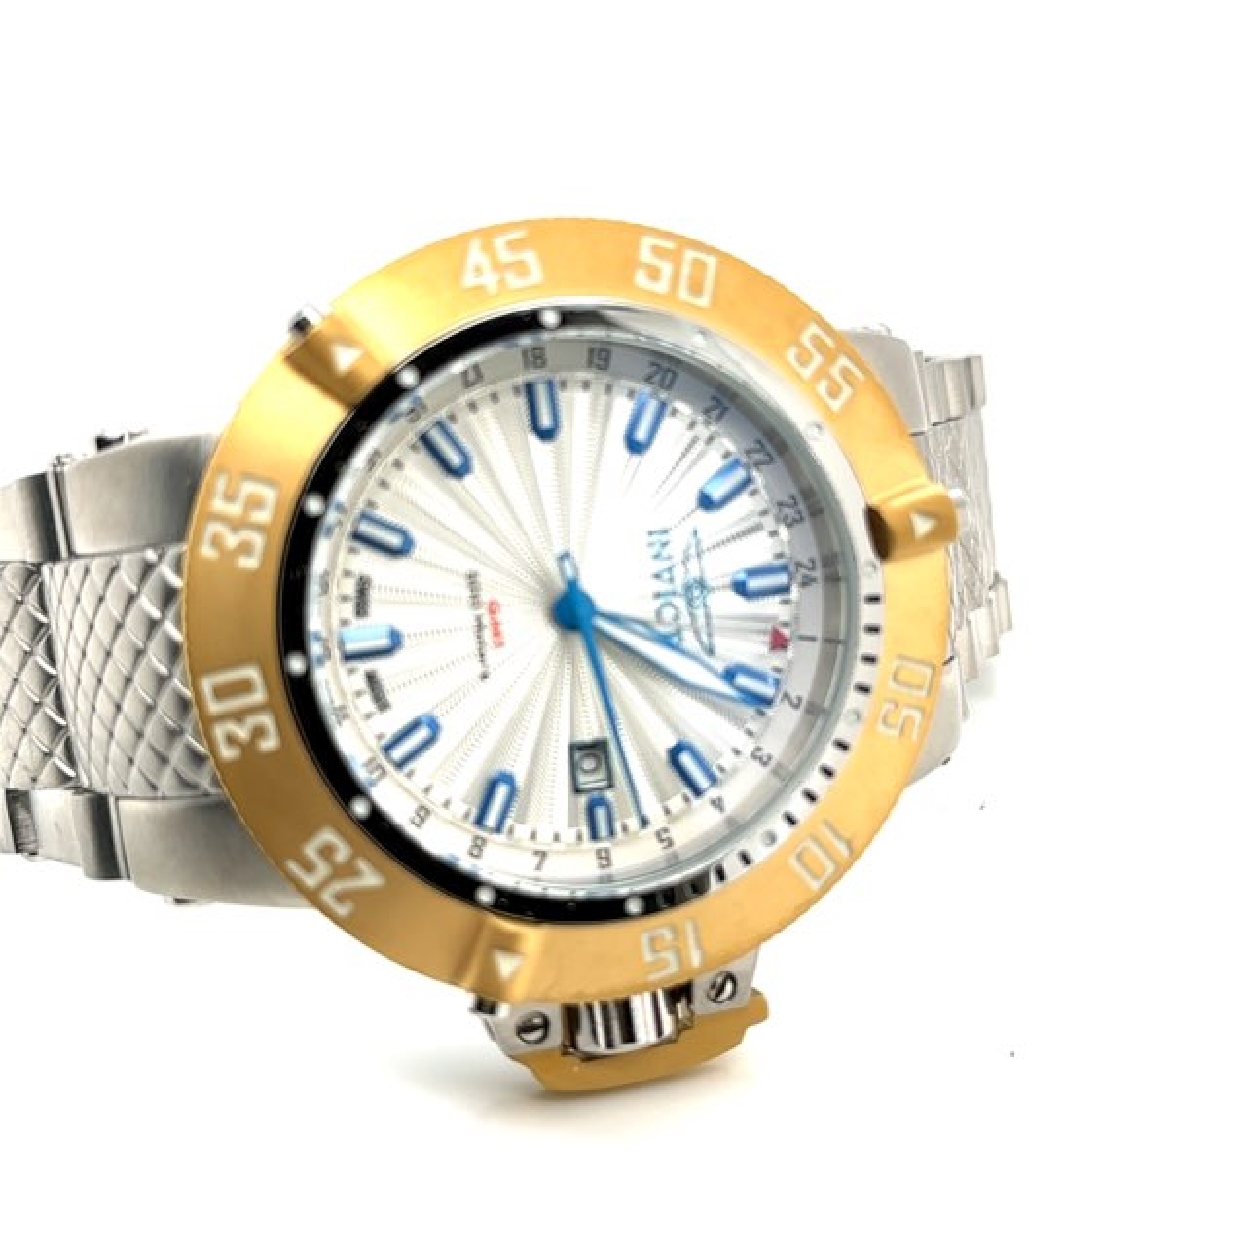 Invicta Sub Aqua Watch
21729
50mm
500m